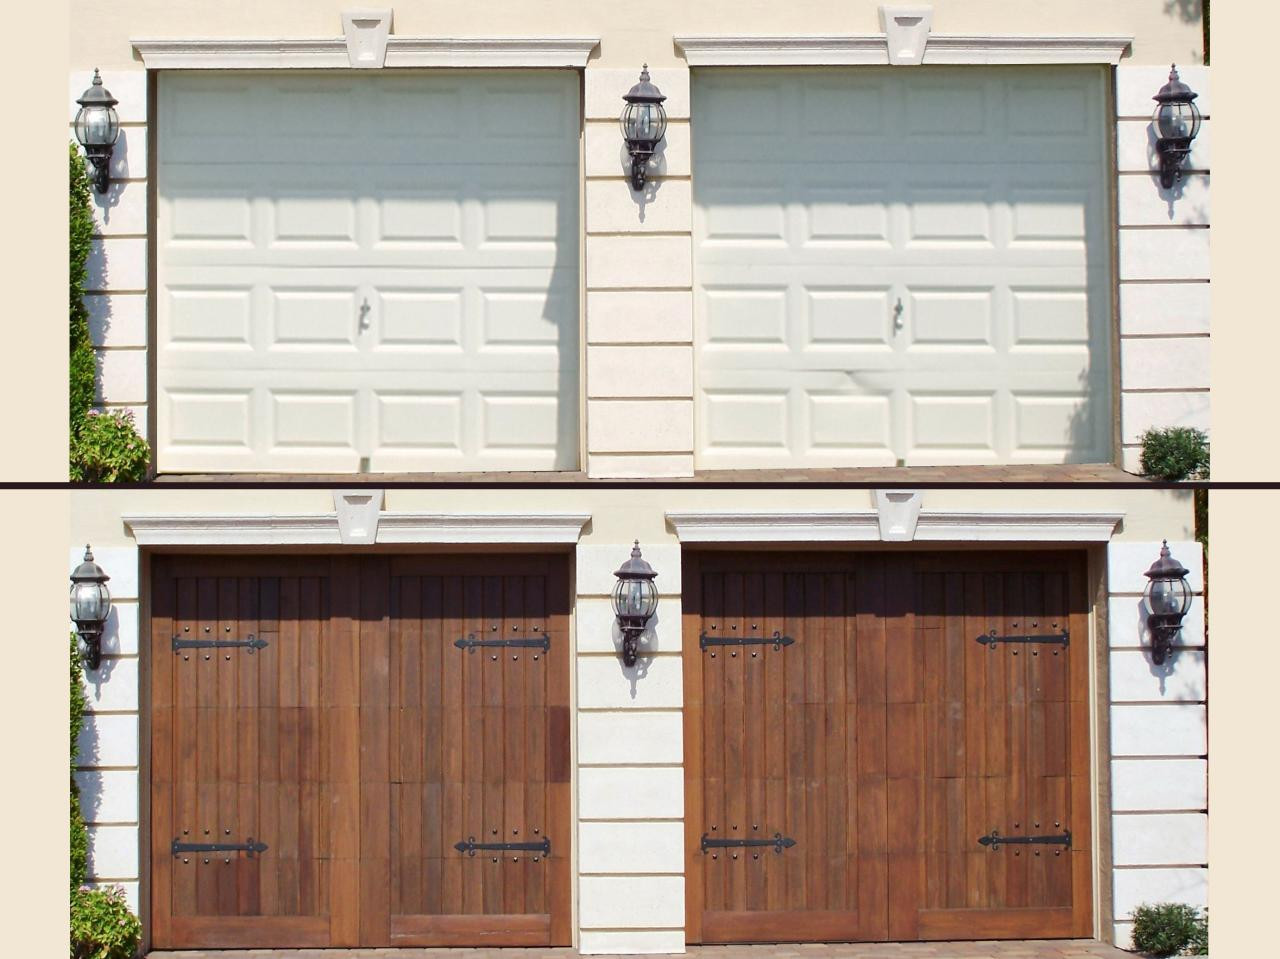 Best ideas about Garage Doors Repair DIY
. Save or Pin Do It Yourself Garage Door Repair Dap fice Now.